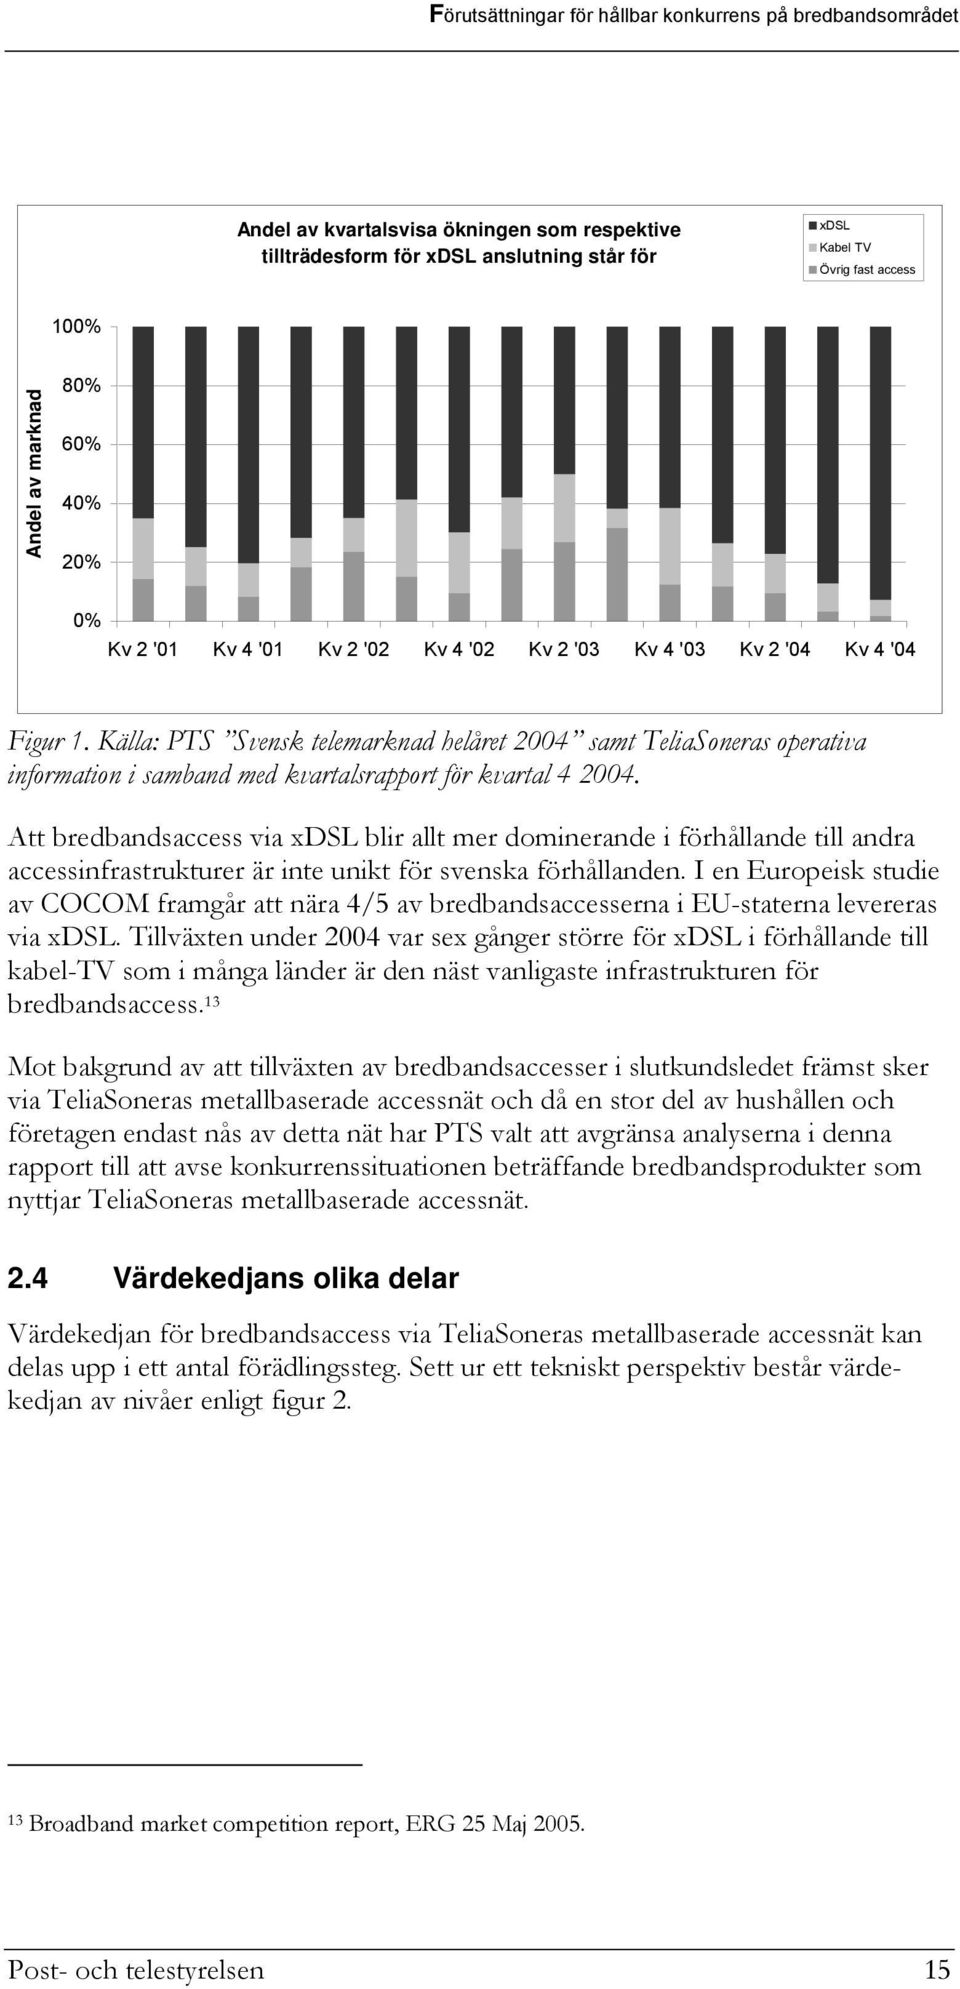 Att bredbandsaccess via xdsl blir allt mer dominerande i förhållande till andra accessinfrastrukturer är inte unikt för svenska förhållanden.